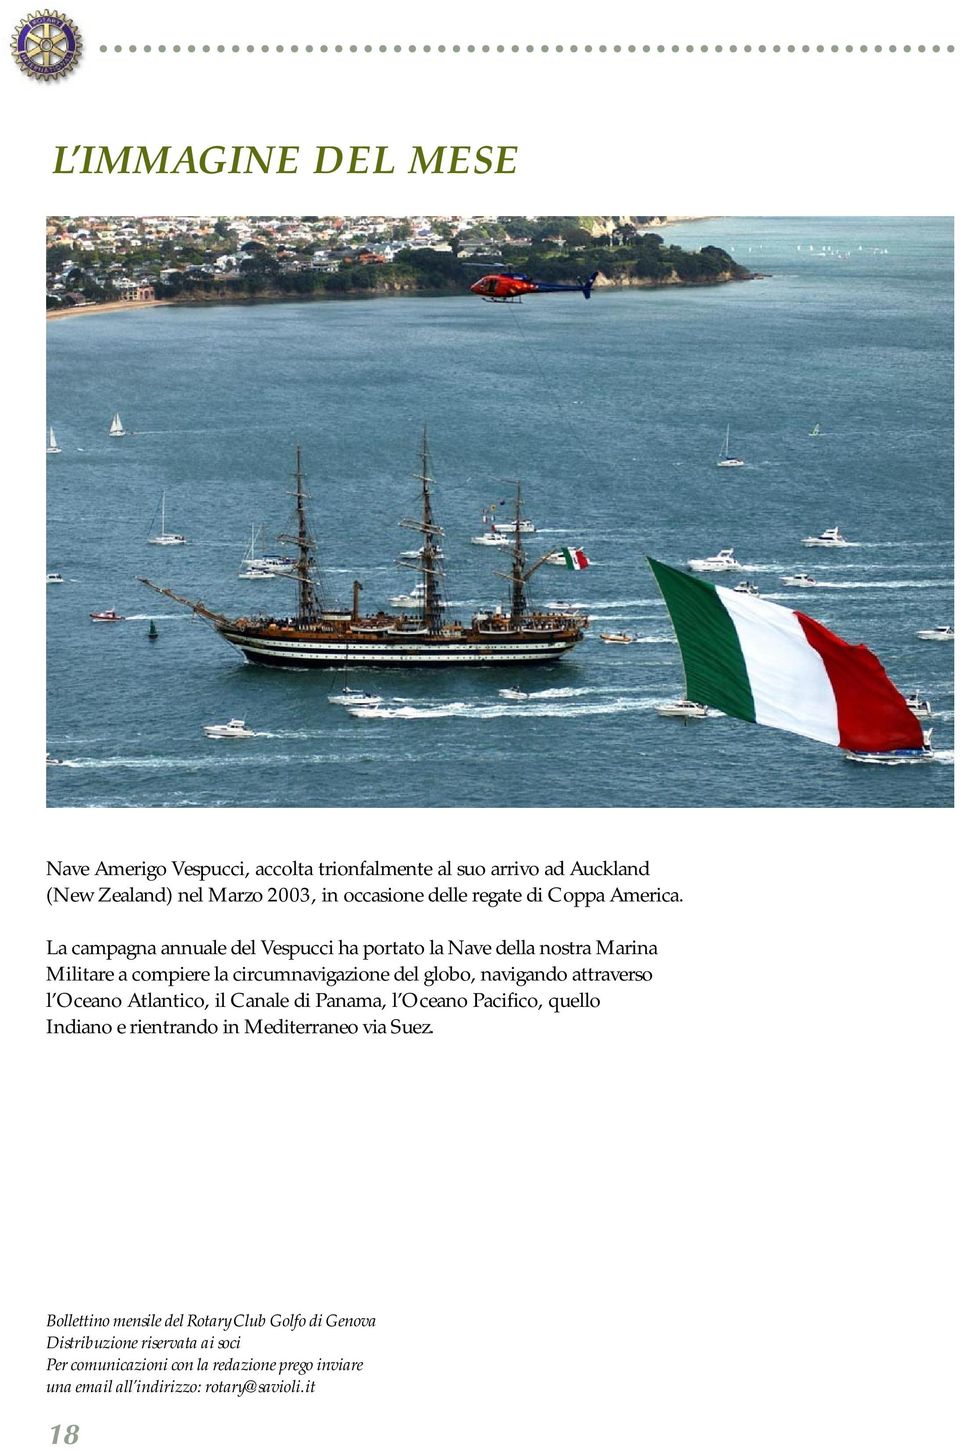 La campagna annuale del Vespucci ha portato la Nave della nostra Marina Militare a compiere la circumnavigazione del globo, navigando attraverso l